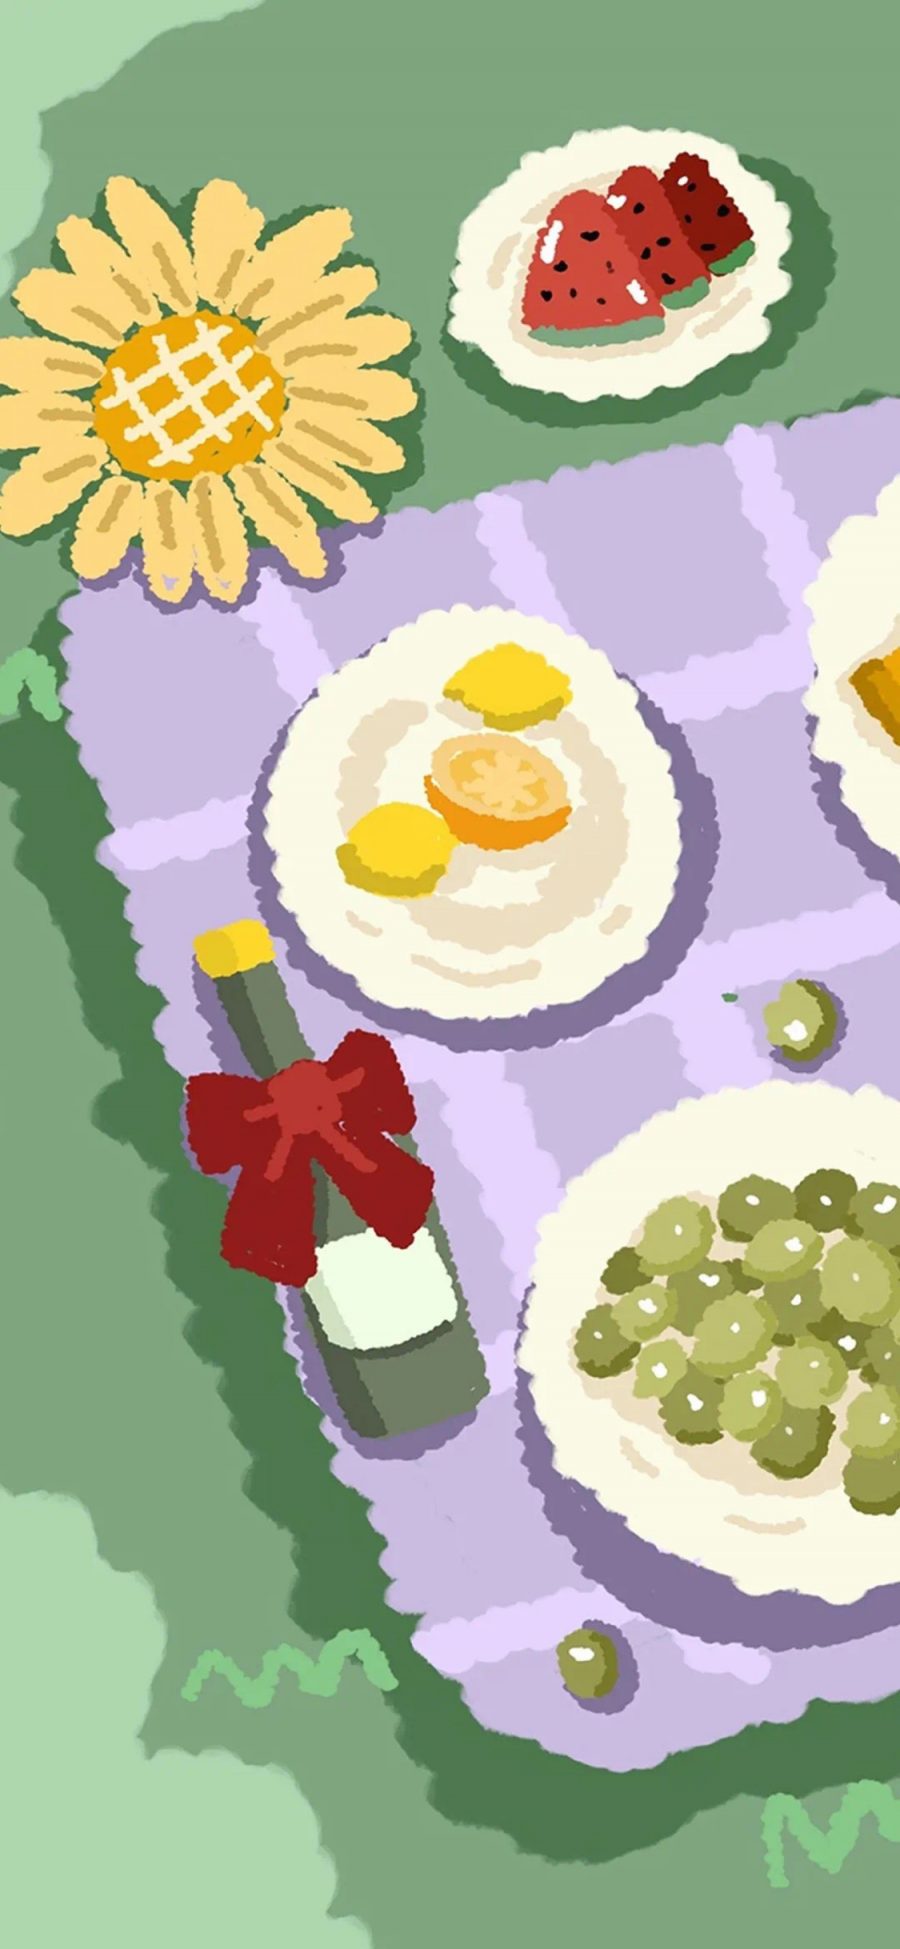 [2436×1125]插图 野餐 葡萄酒 向日葵 苹果手机动漫壁纸图片